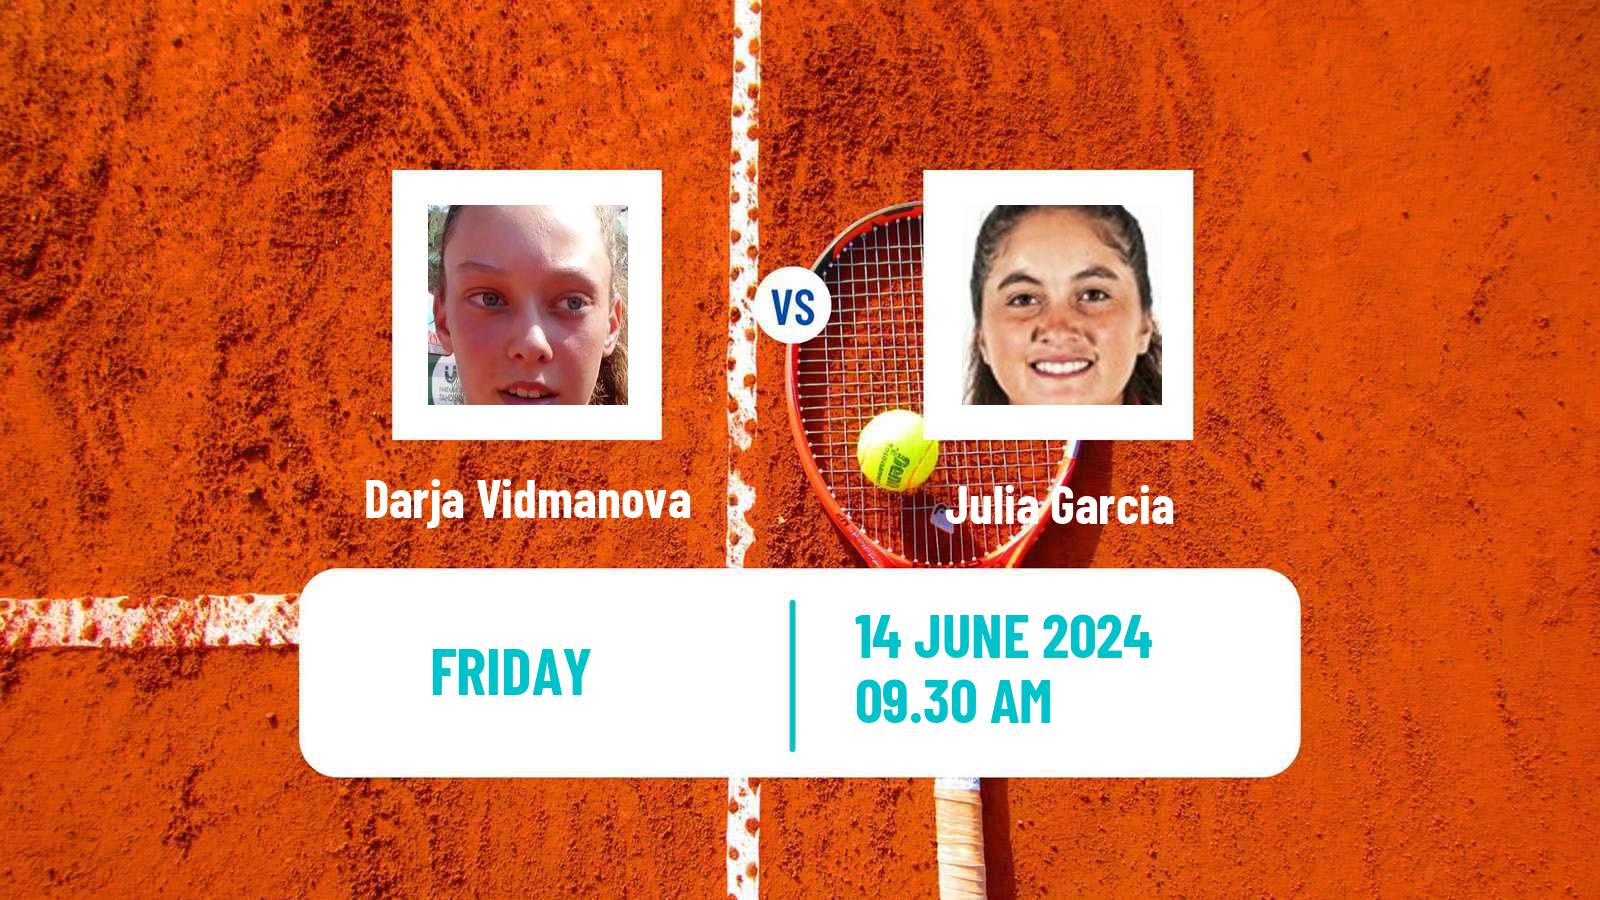 Tennis ITF W15 Santo Domingo 2 Women Darja Vidmanova - Julia Garcia